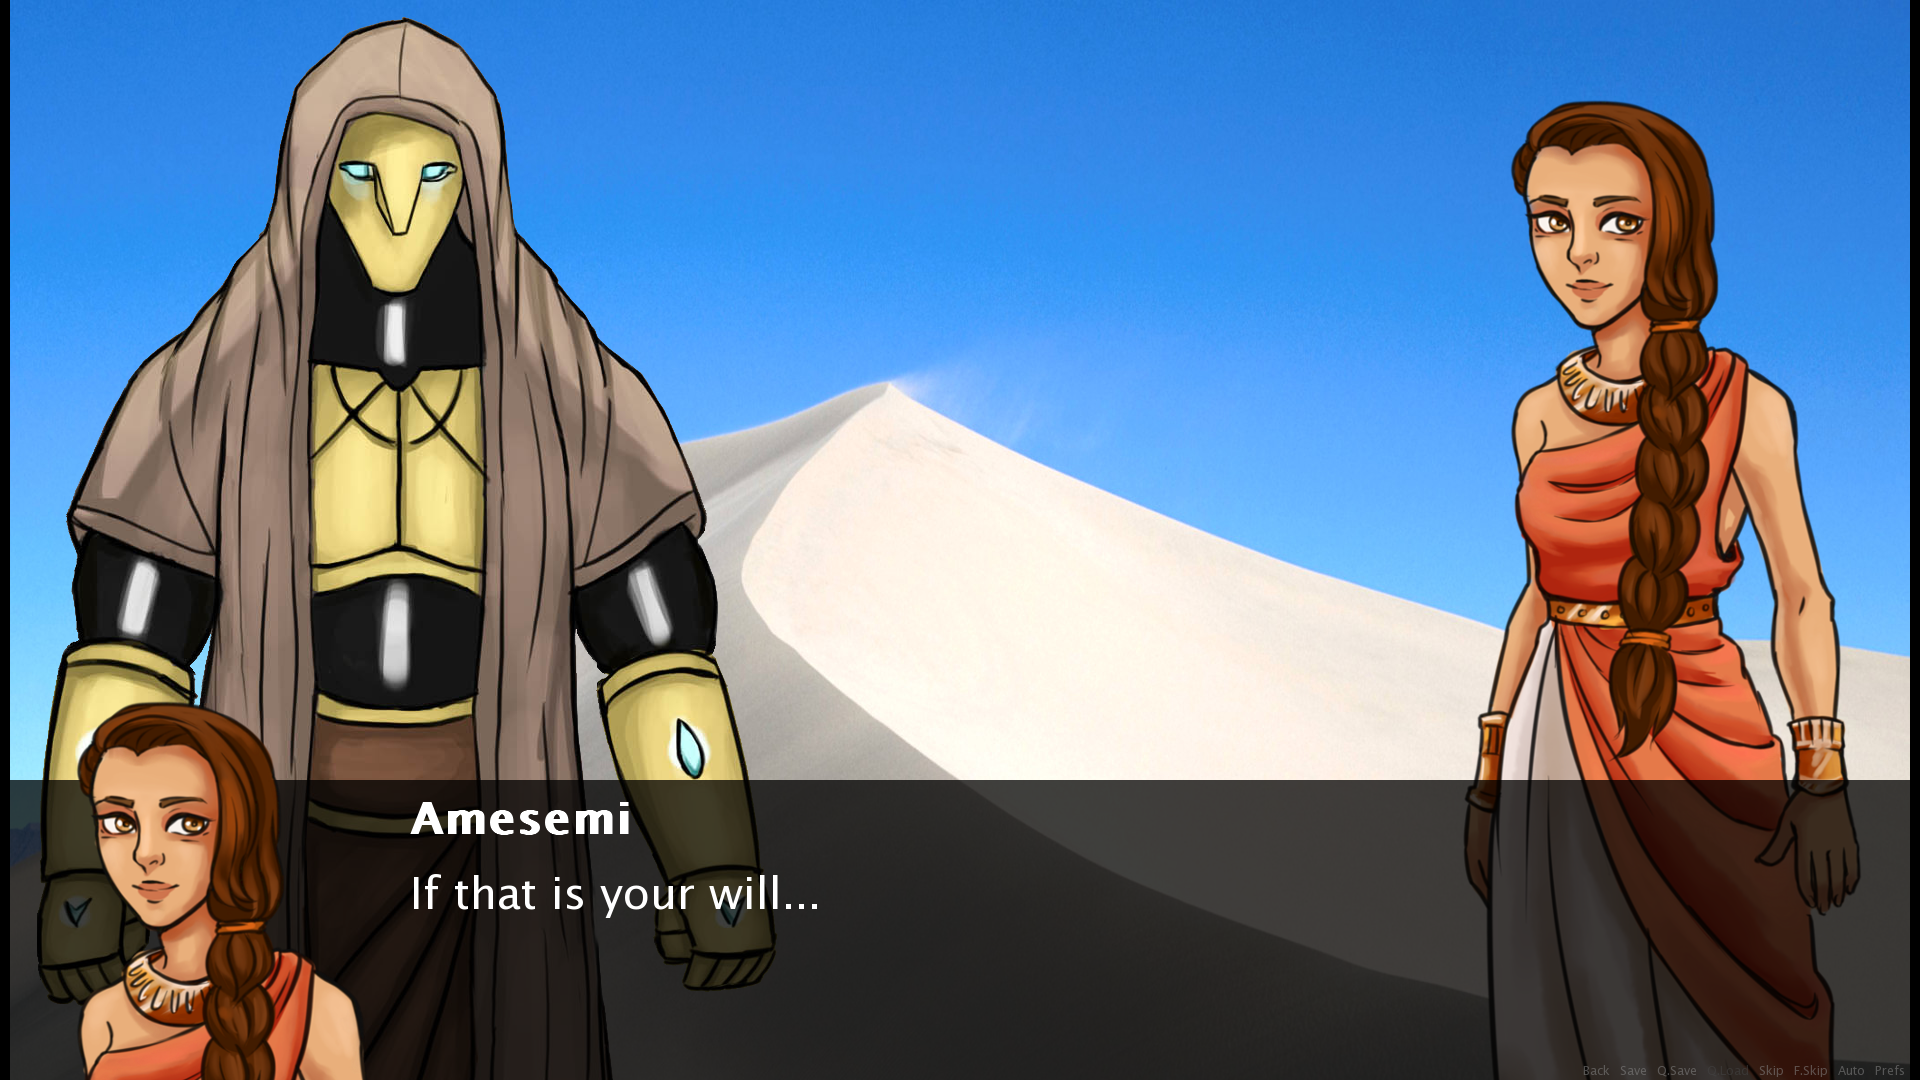 Amesemi and Nun